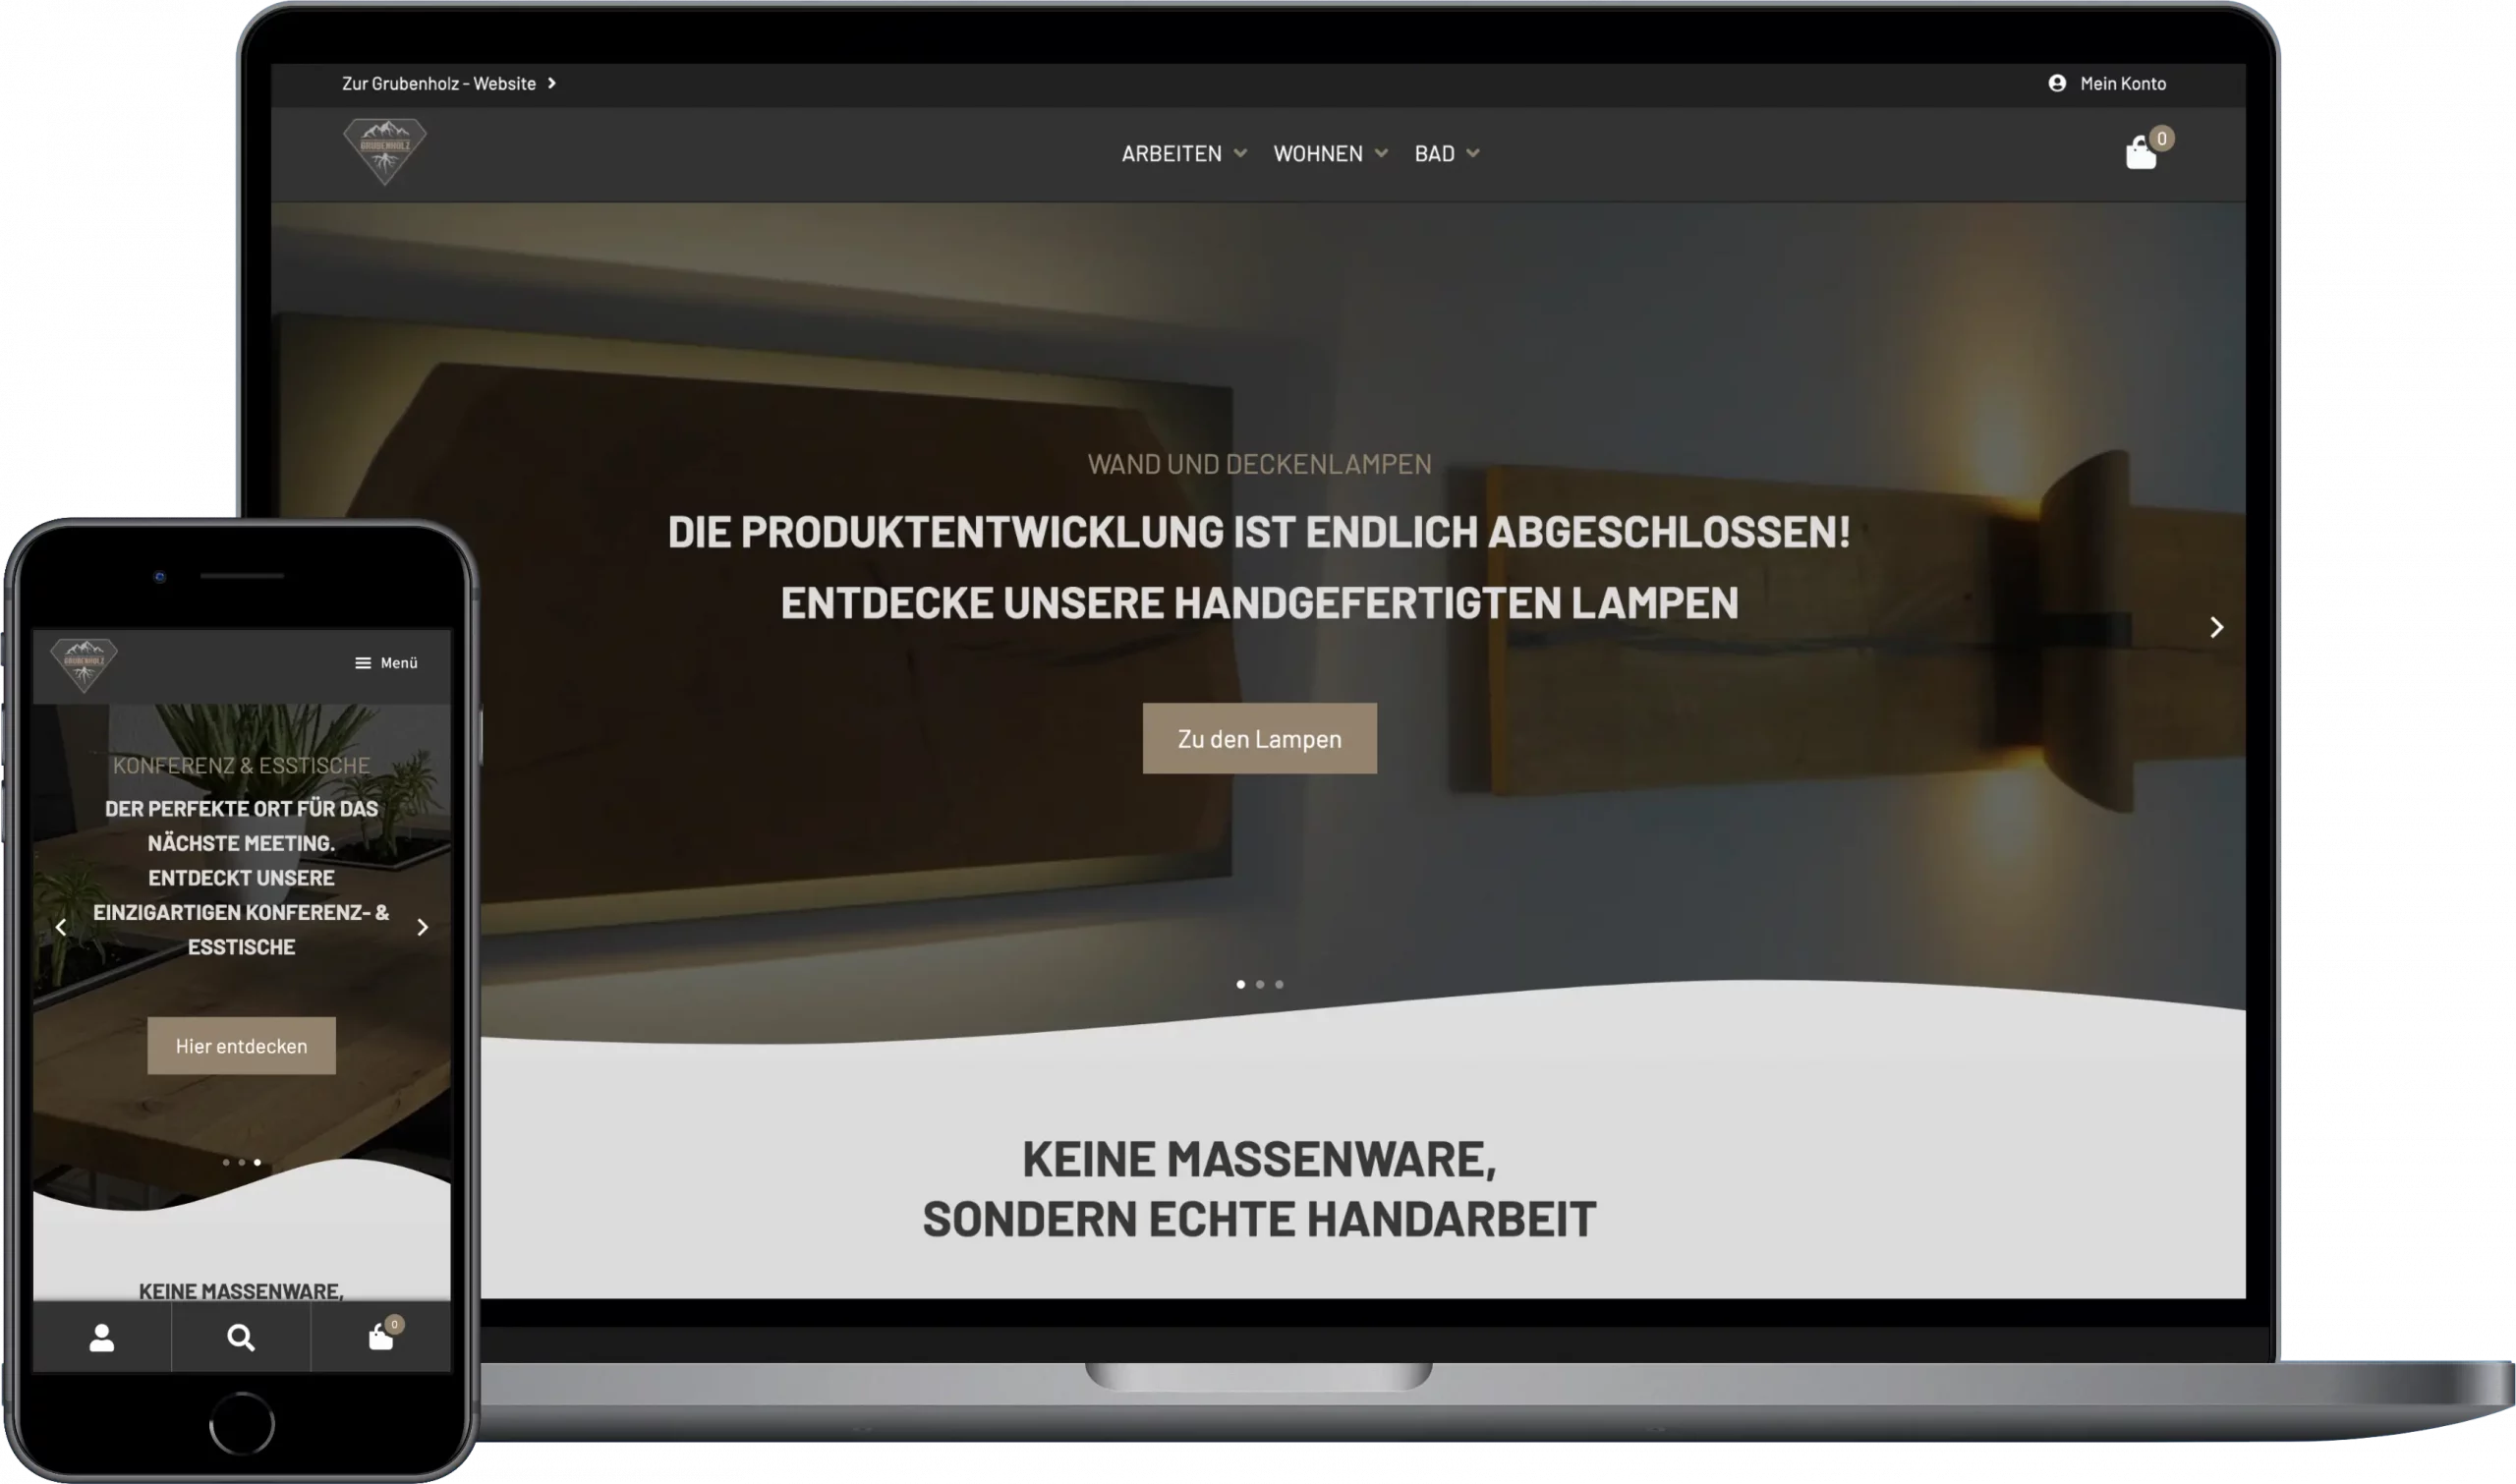 Die Bochumer Manufaktur Grubenholz, hat ihren Onlineshop erstellen lassen. Zu sehen ist ein Screenshot von der Startseite des Webshops.